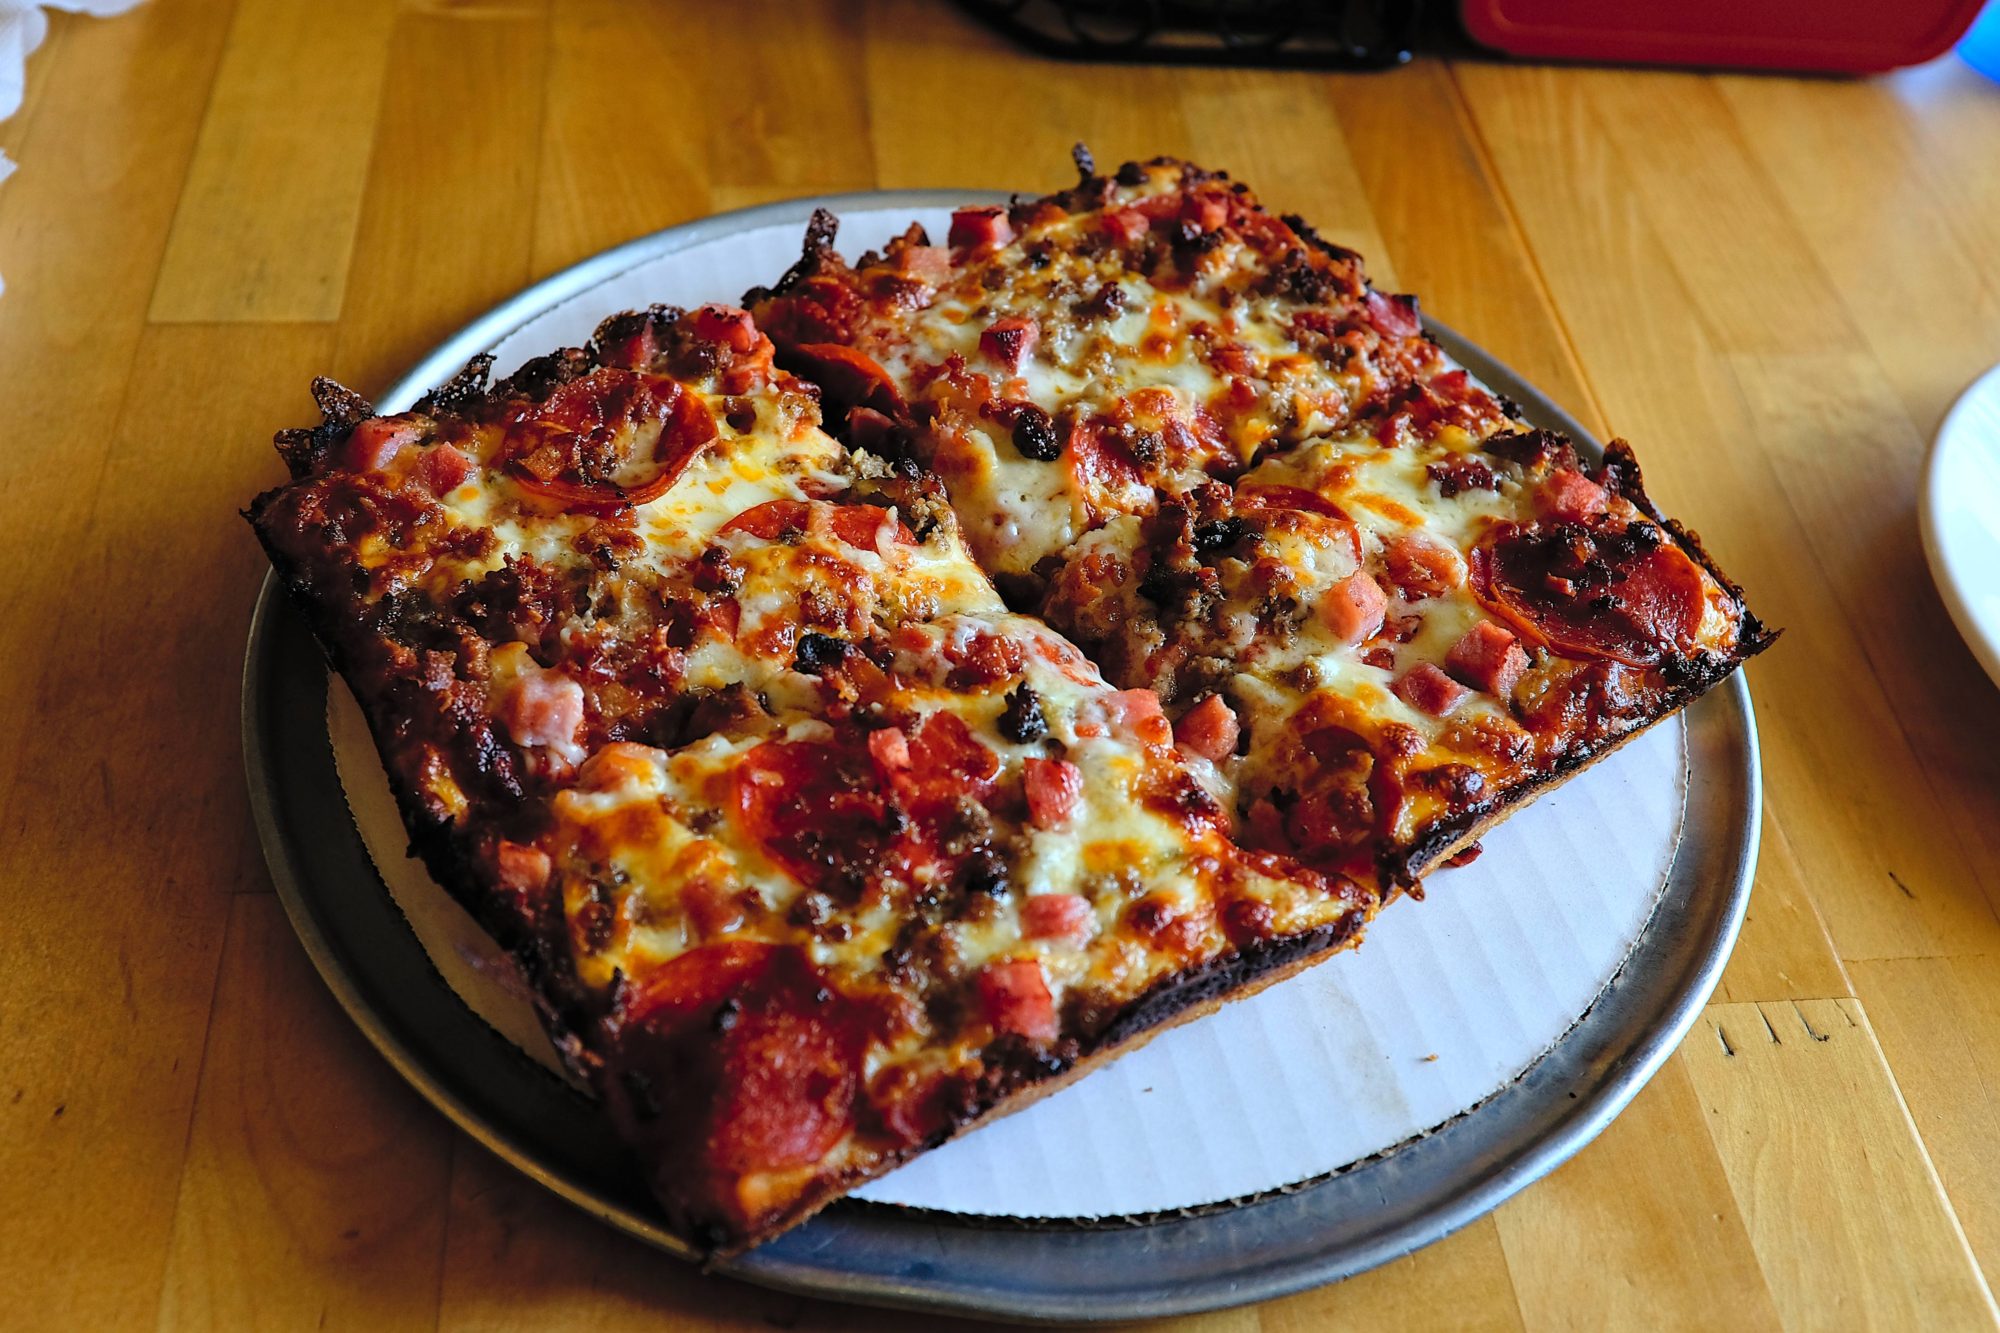 A Detroit style pizza